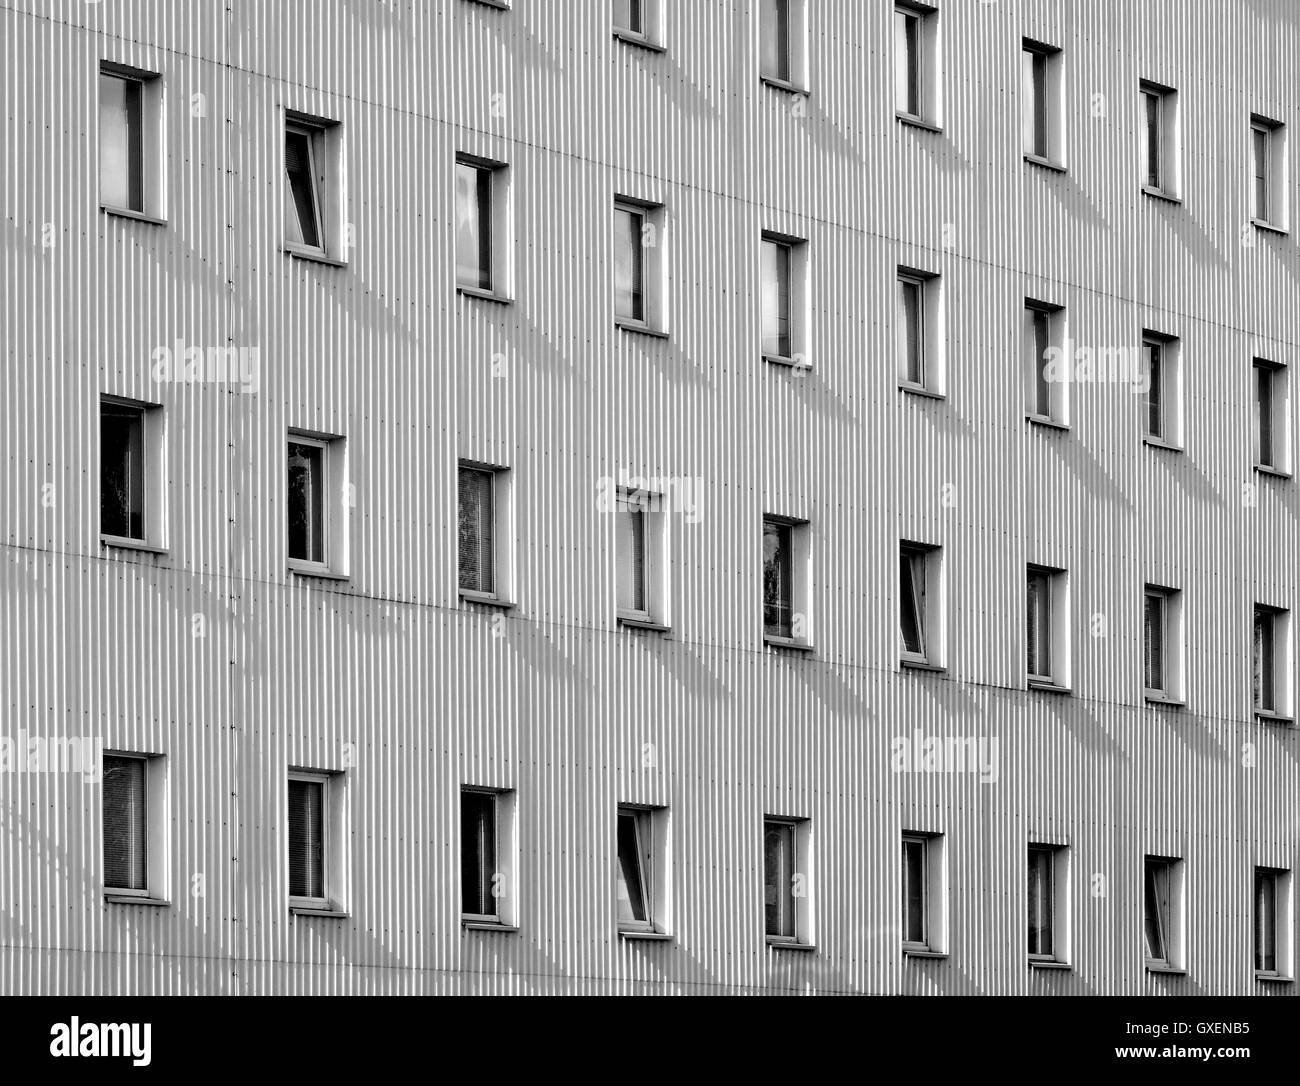 L'architecture moderne résumé fond géométrique : la façade de l'immeuble avec panneaux aluminium comme une voie d'évitement et le nombre de fenêtres. Banque D'Images